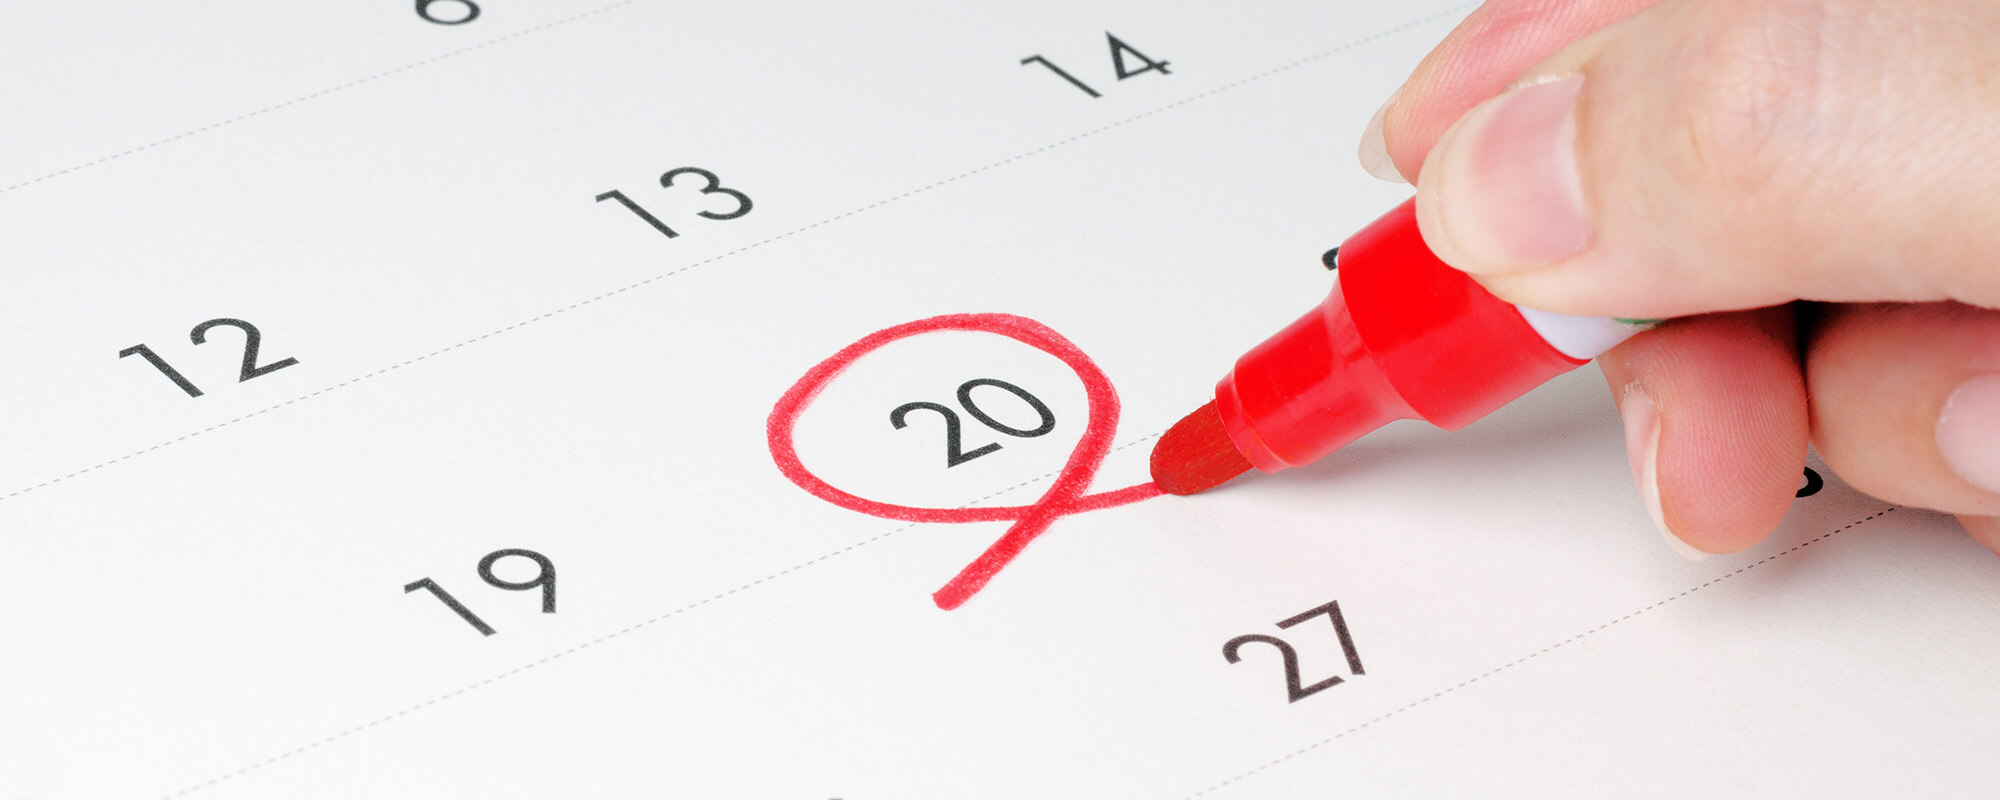 Eine Hand umkreist mit einem roten Stift die Zahl „20“ auf einem Kalenderblatt.